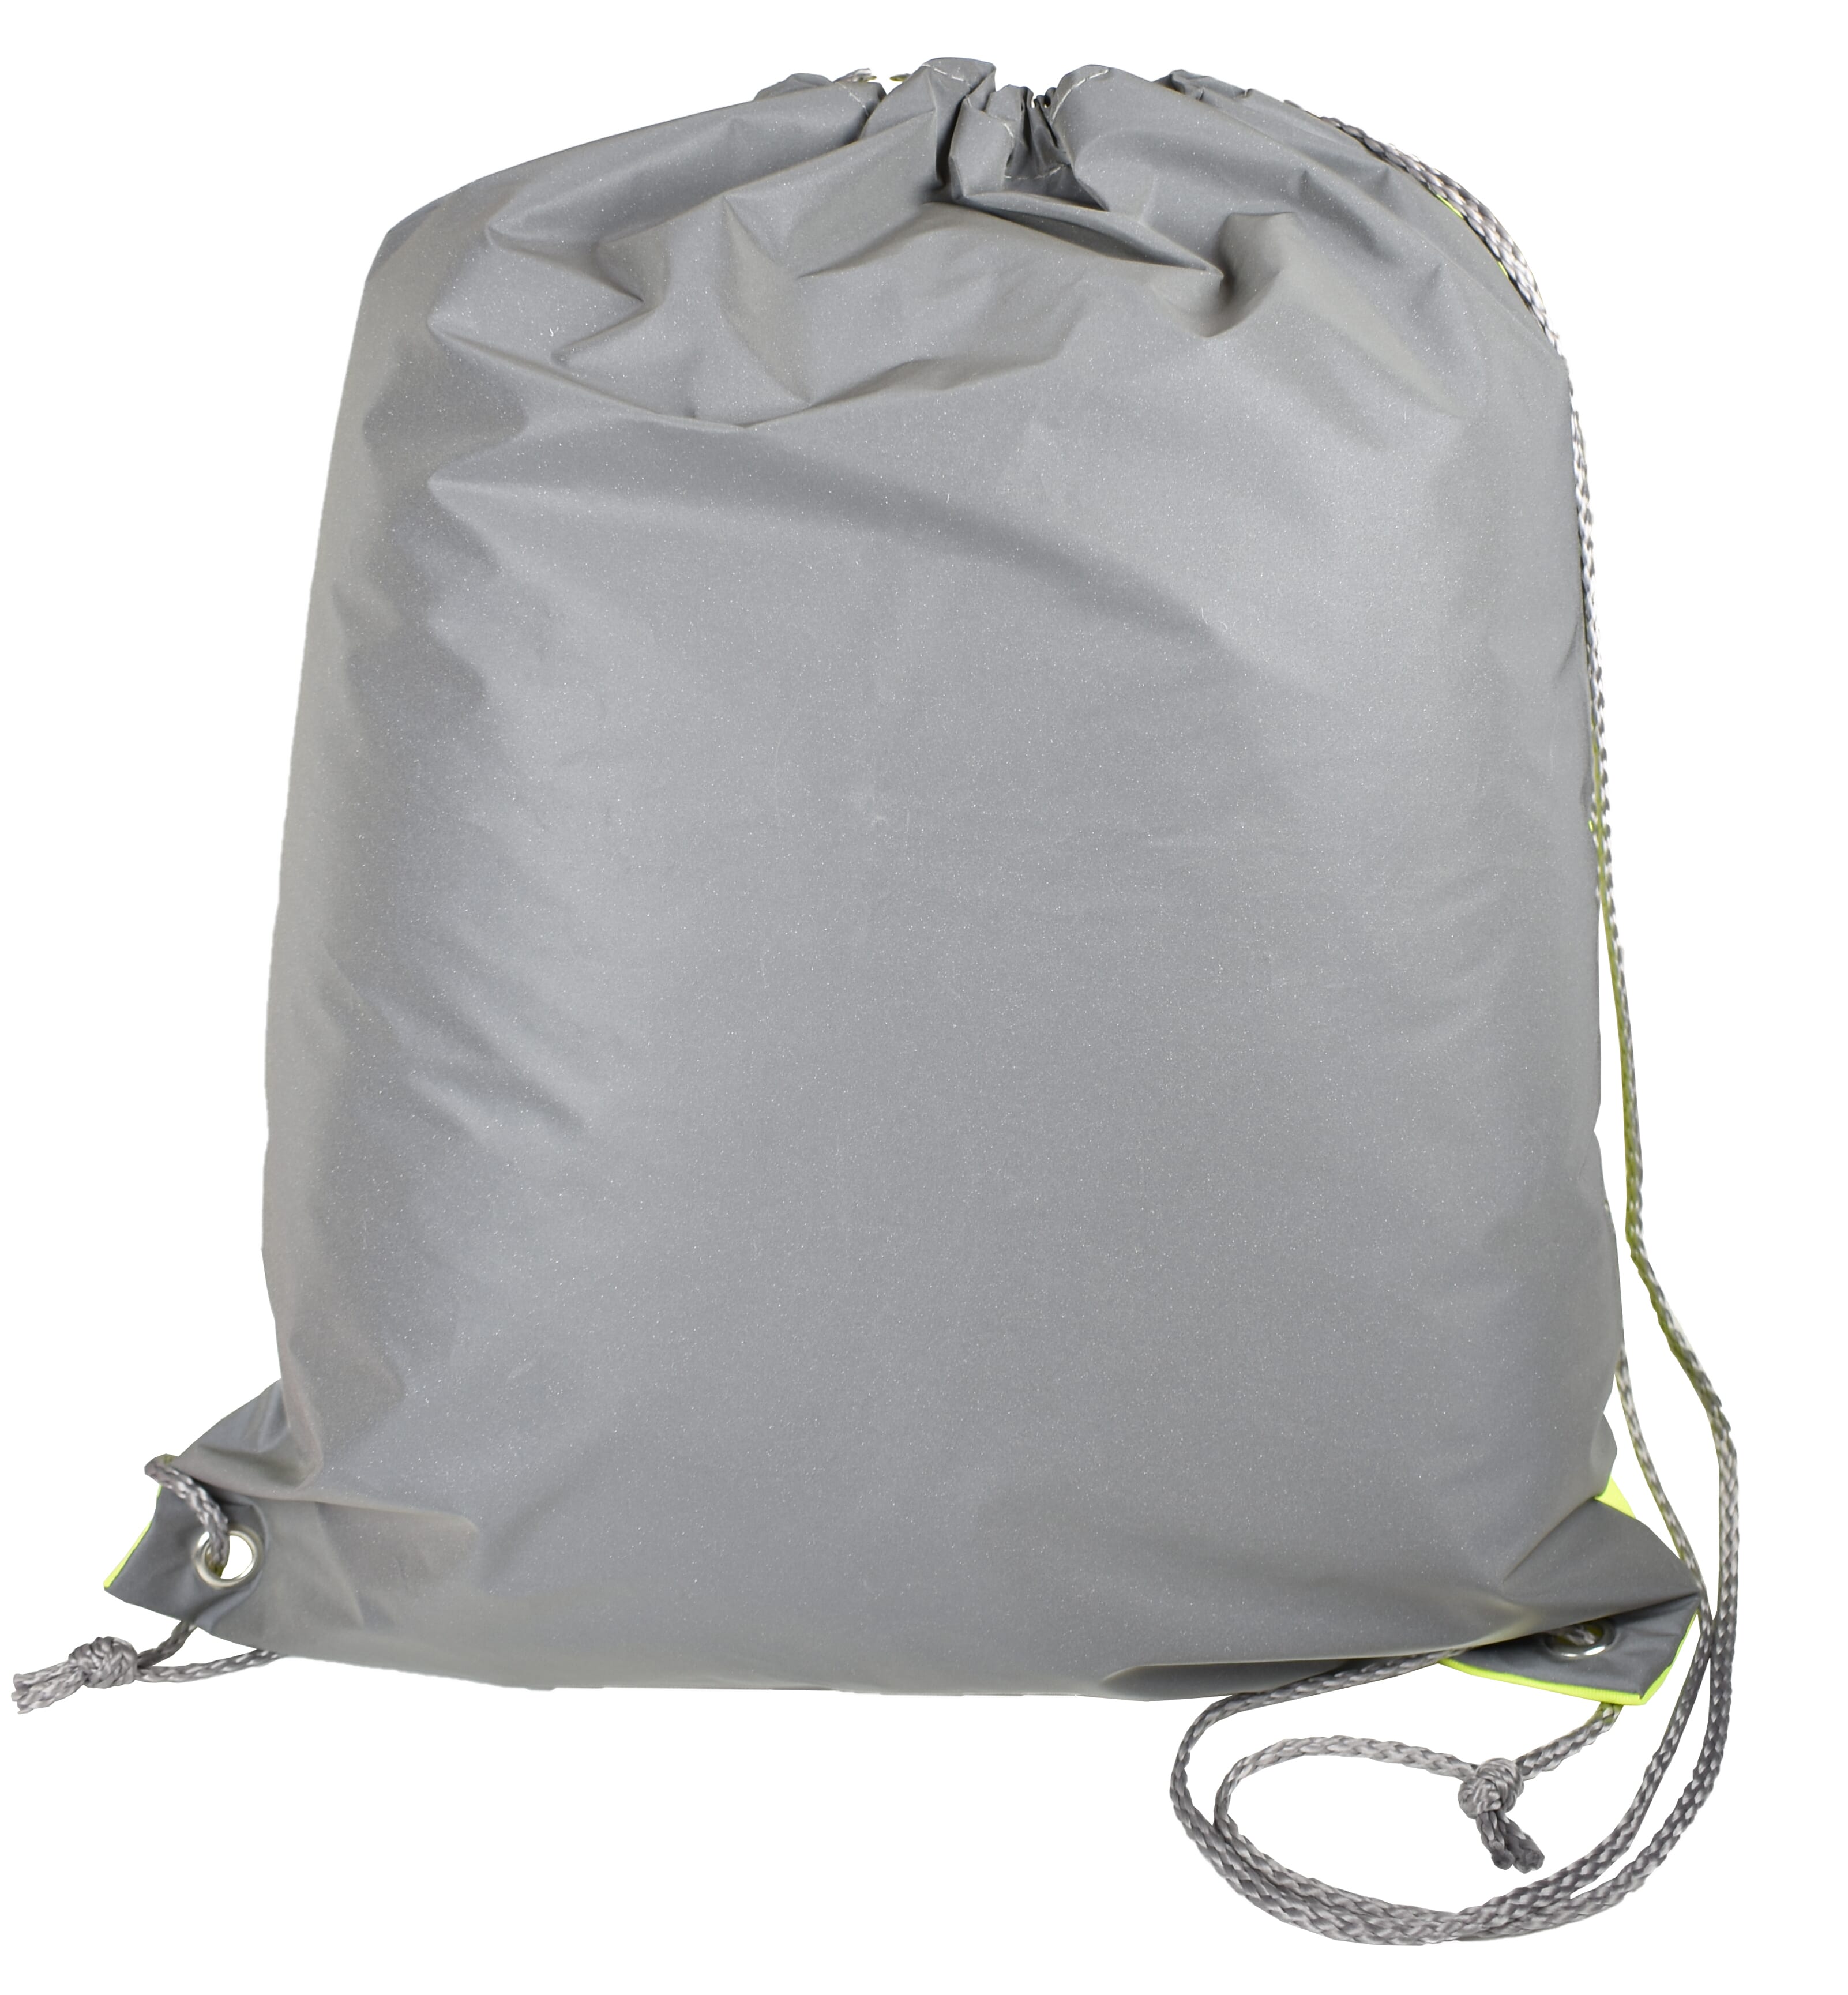 Safety Reflective Backpack - Egerton